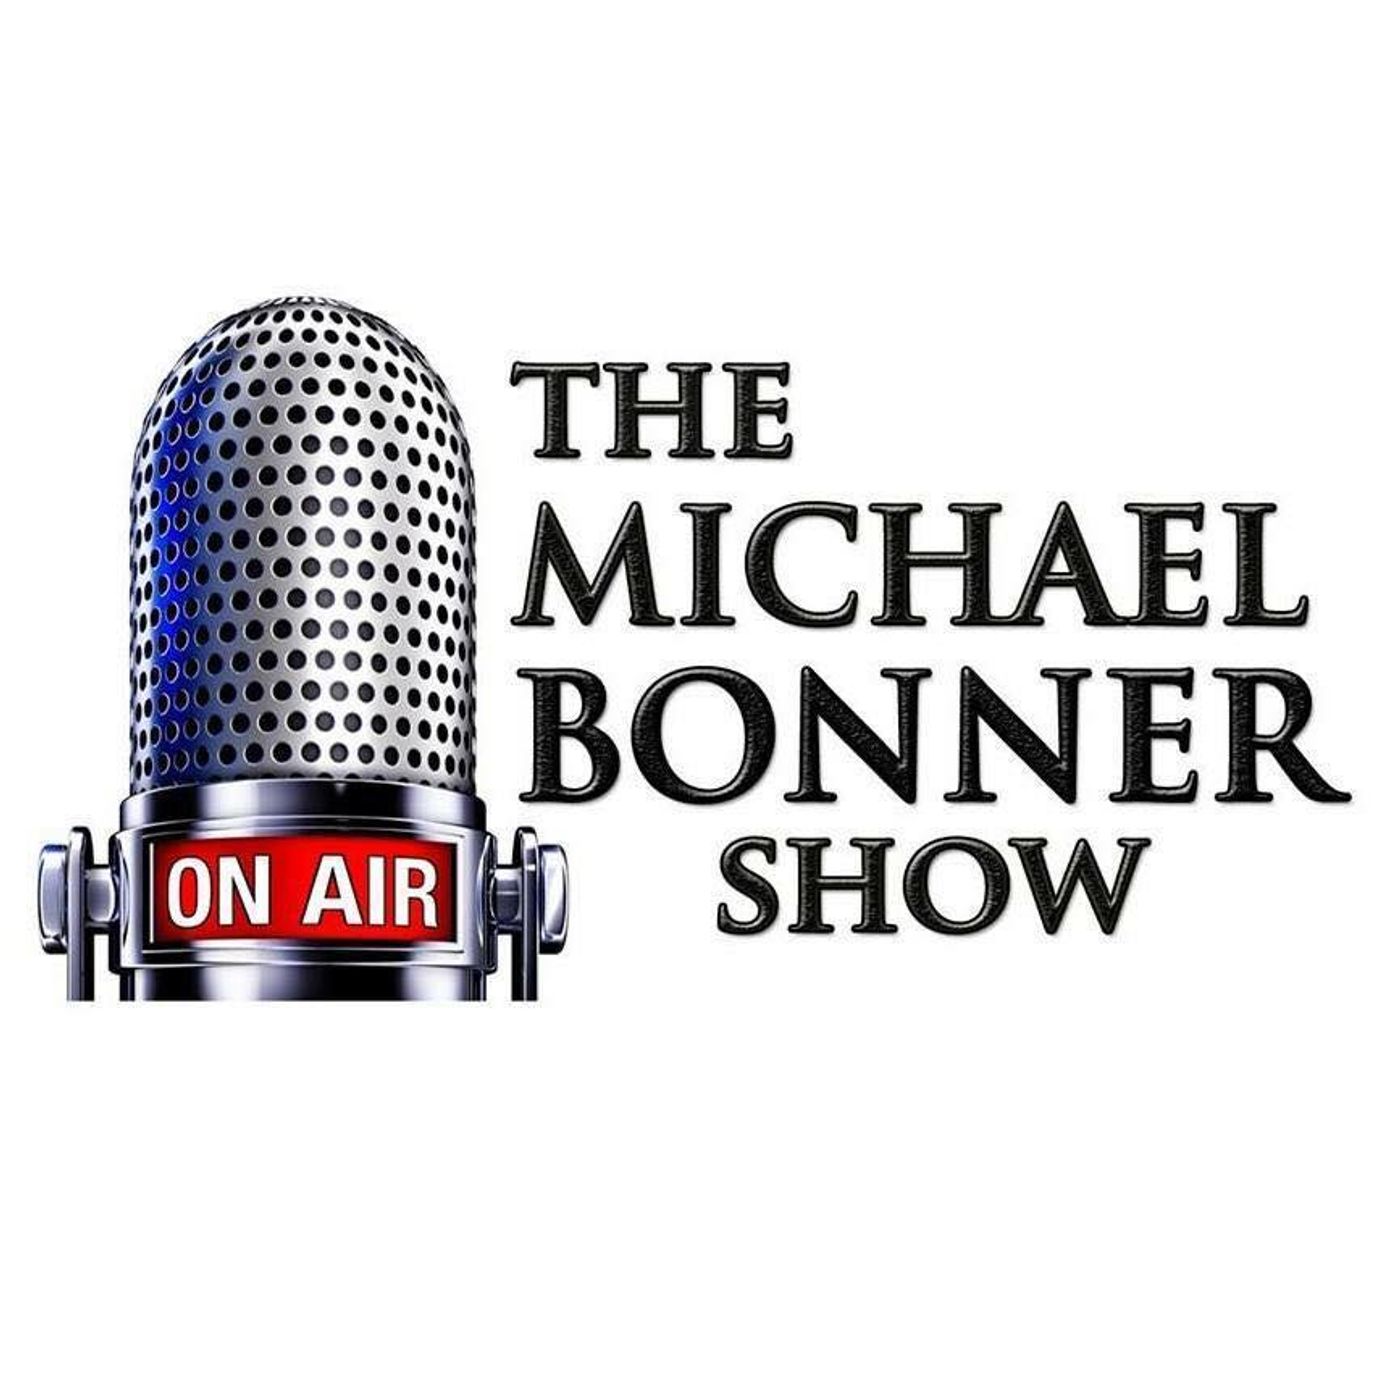 The Michael Bonner Show